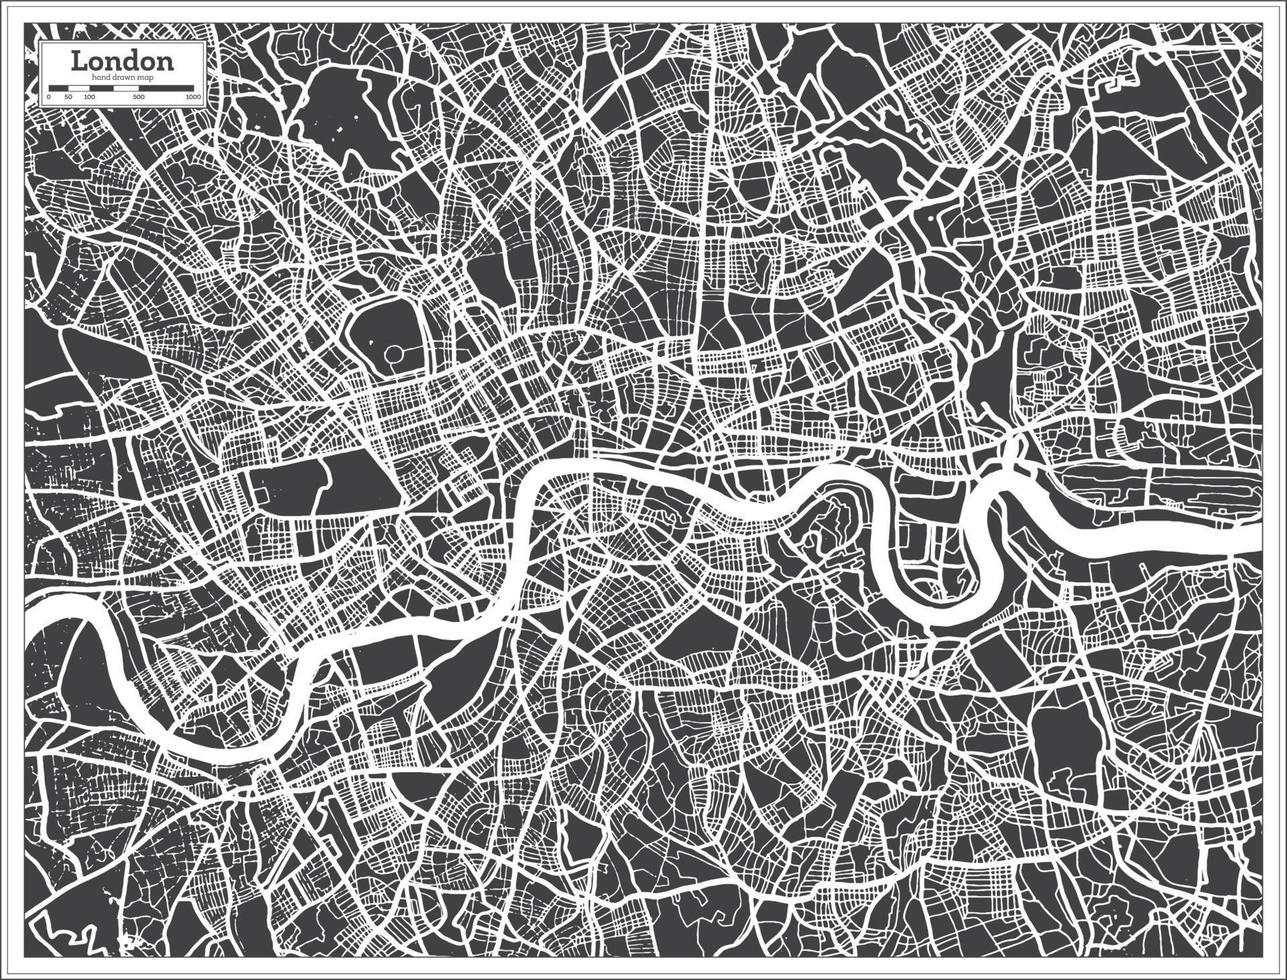 London Storbritannien stad Karta i svart och vit Färg i retro stil. vektor